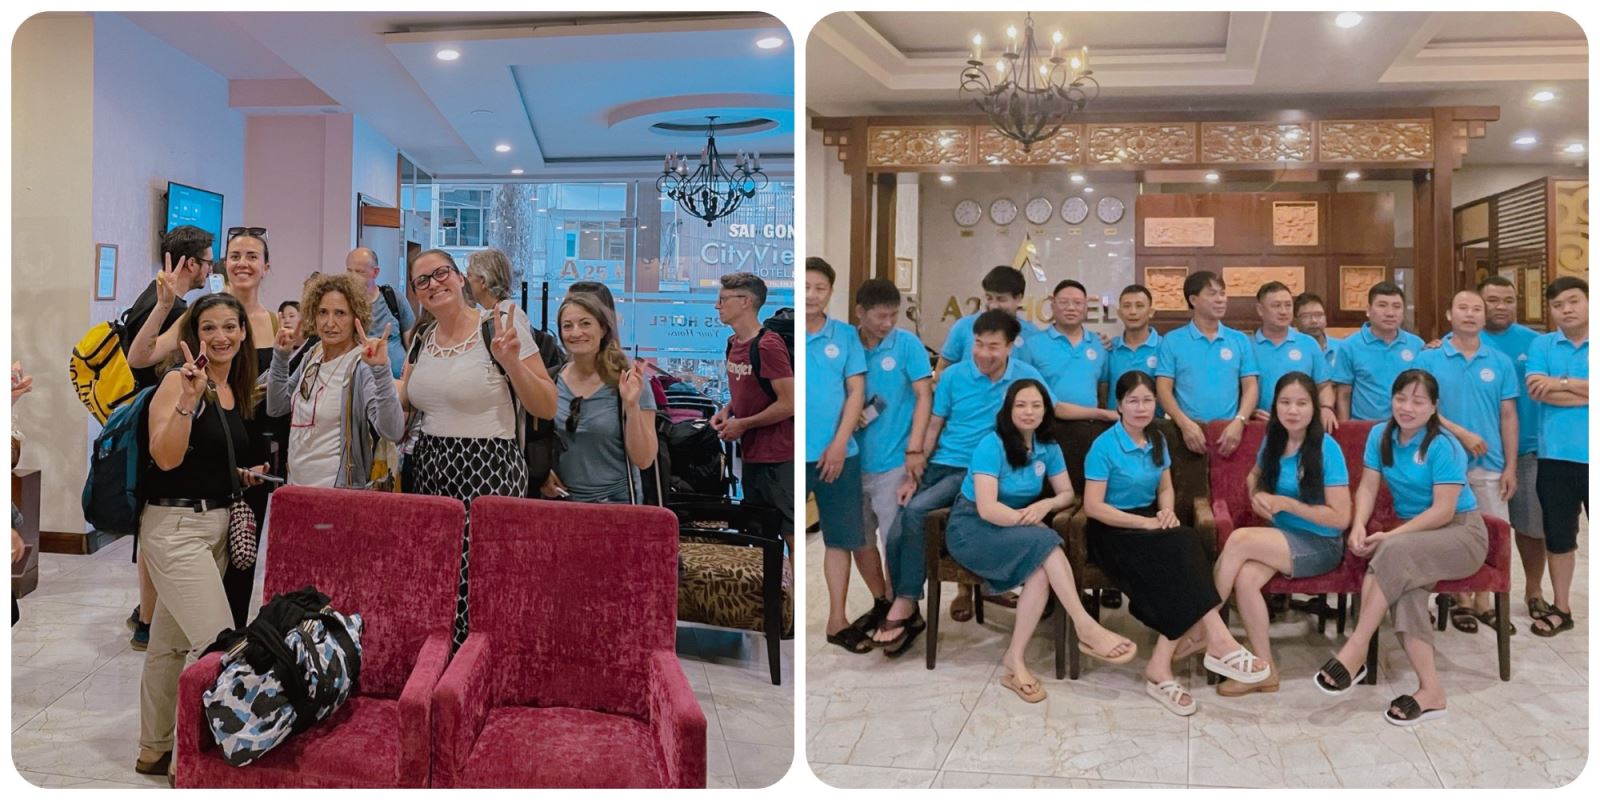 A25 Hotel 20 Bùi Thị Xuân Quận 1 TPHCM “ Khách sạn vui vẻ, phòng sạch sẽ, thức ăn ngon” 